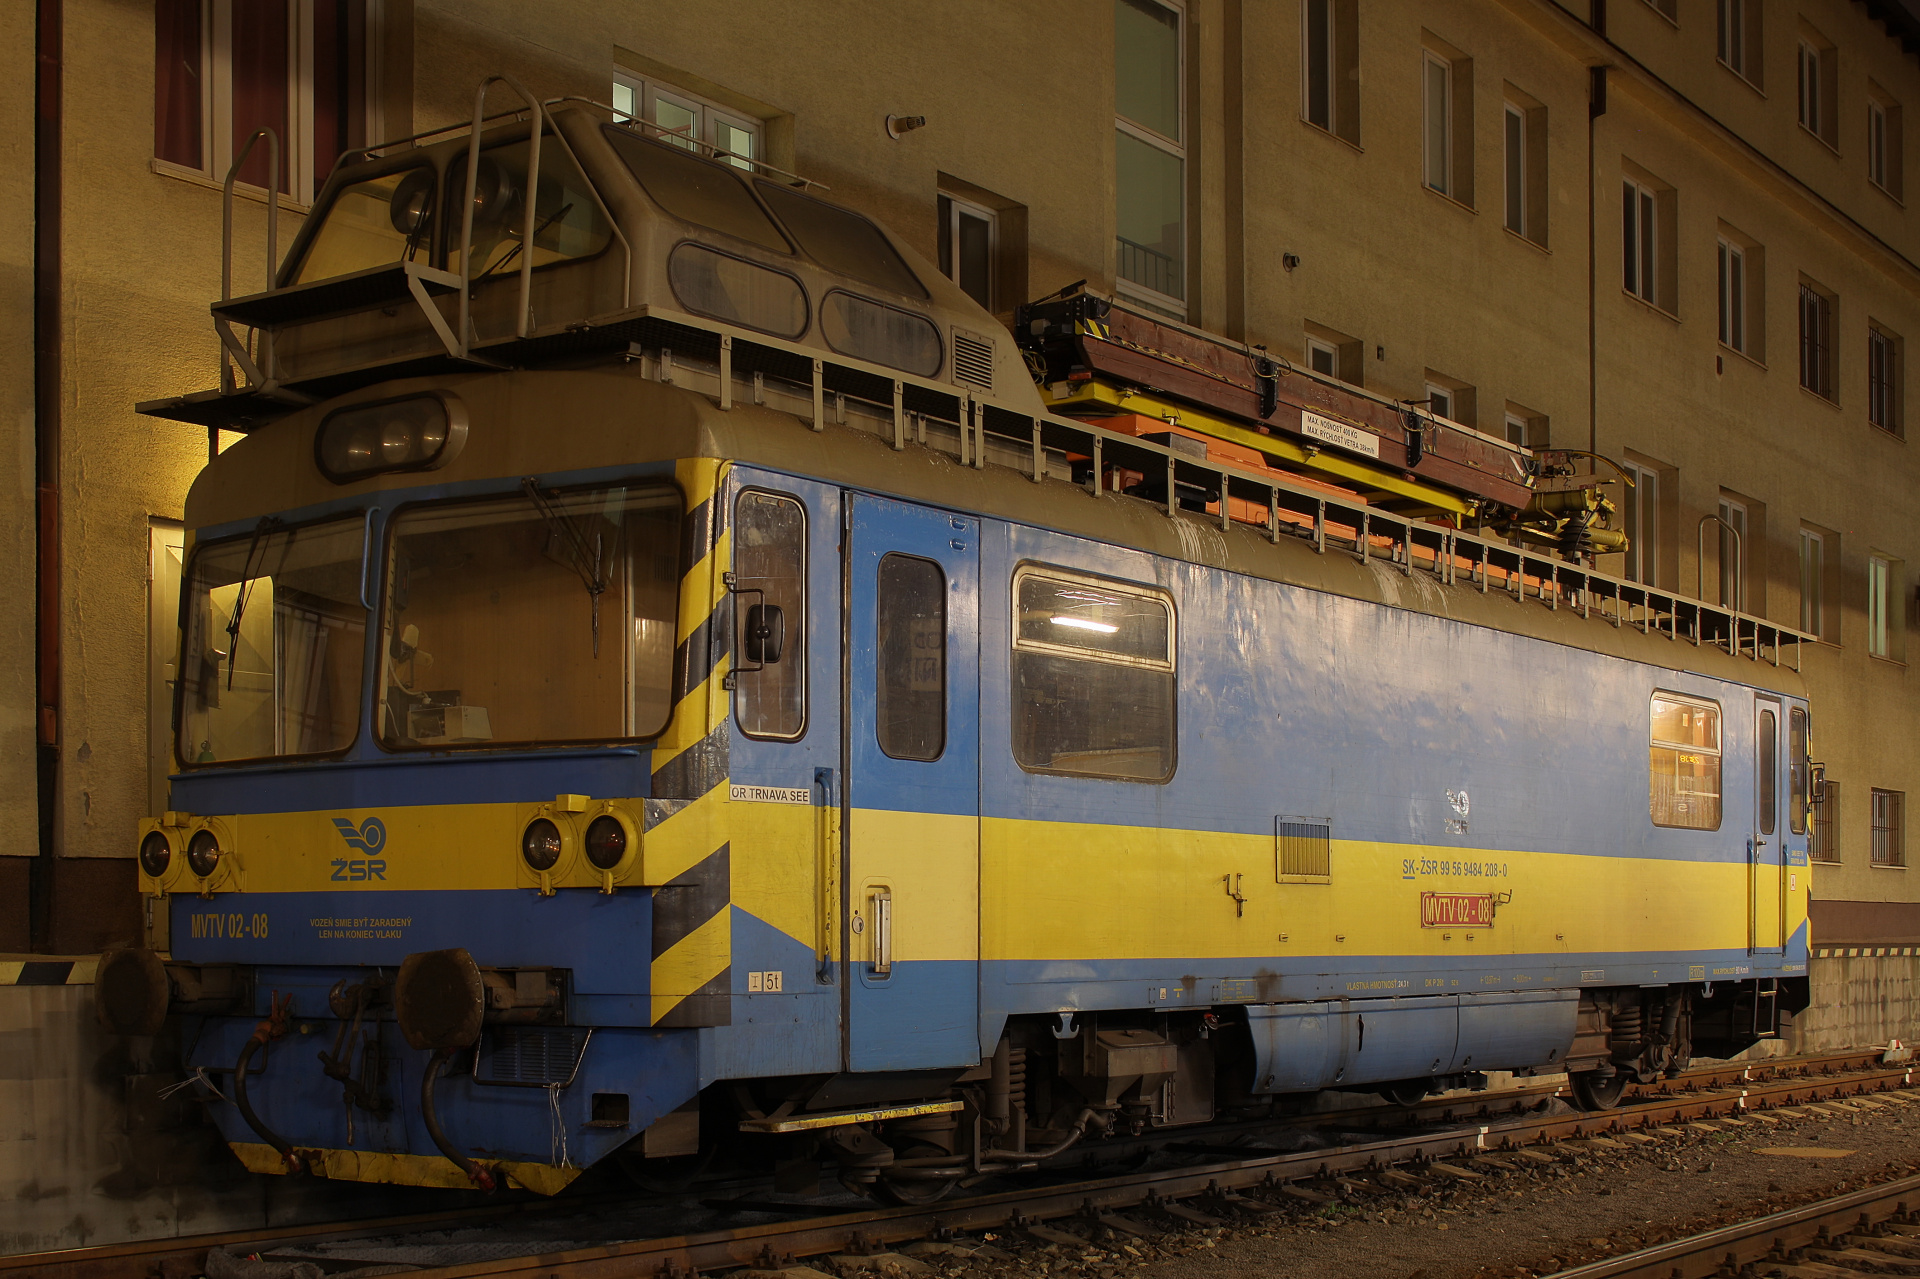 Vagónka Studénka M153.0 MVTV 02-08 (Podróże » Bratysława » Pojazdy » Pociągi i lokomotywy)